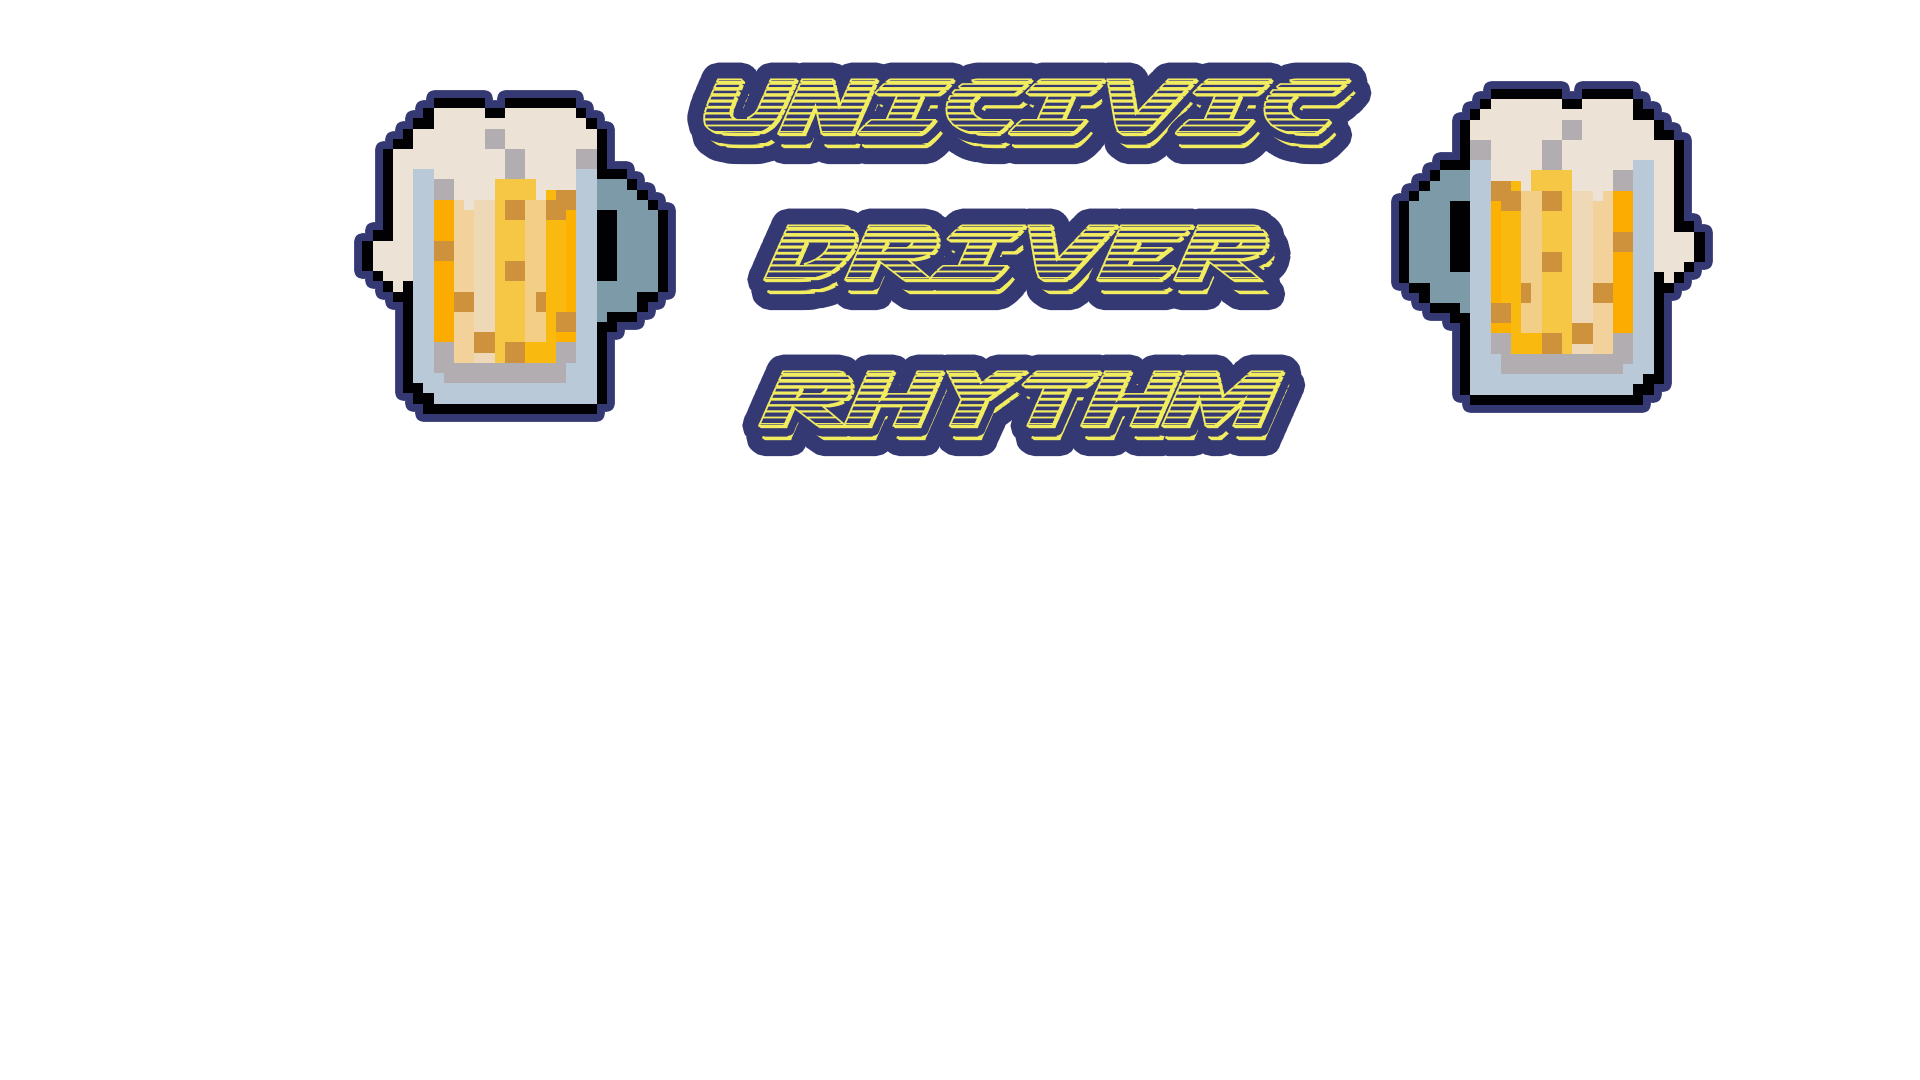 Uncivic Driver Rhythm